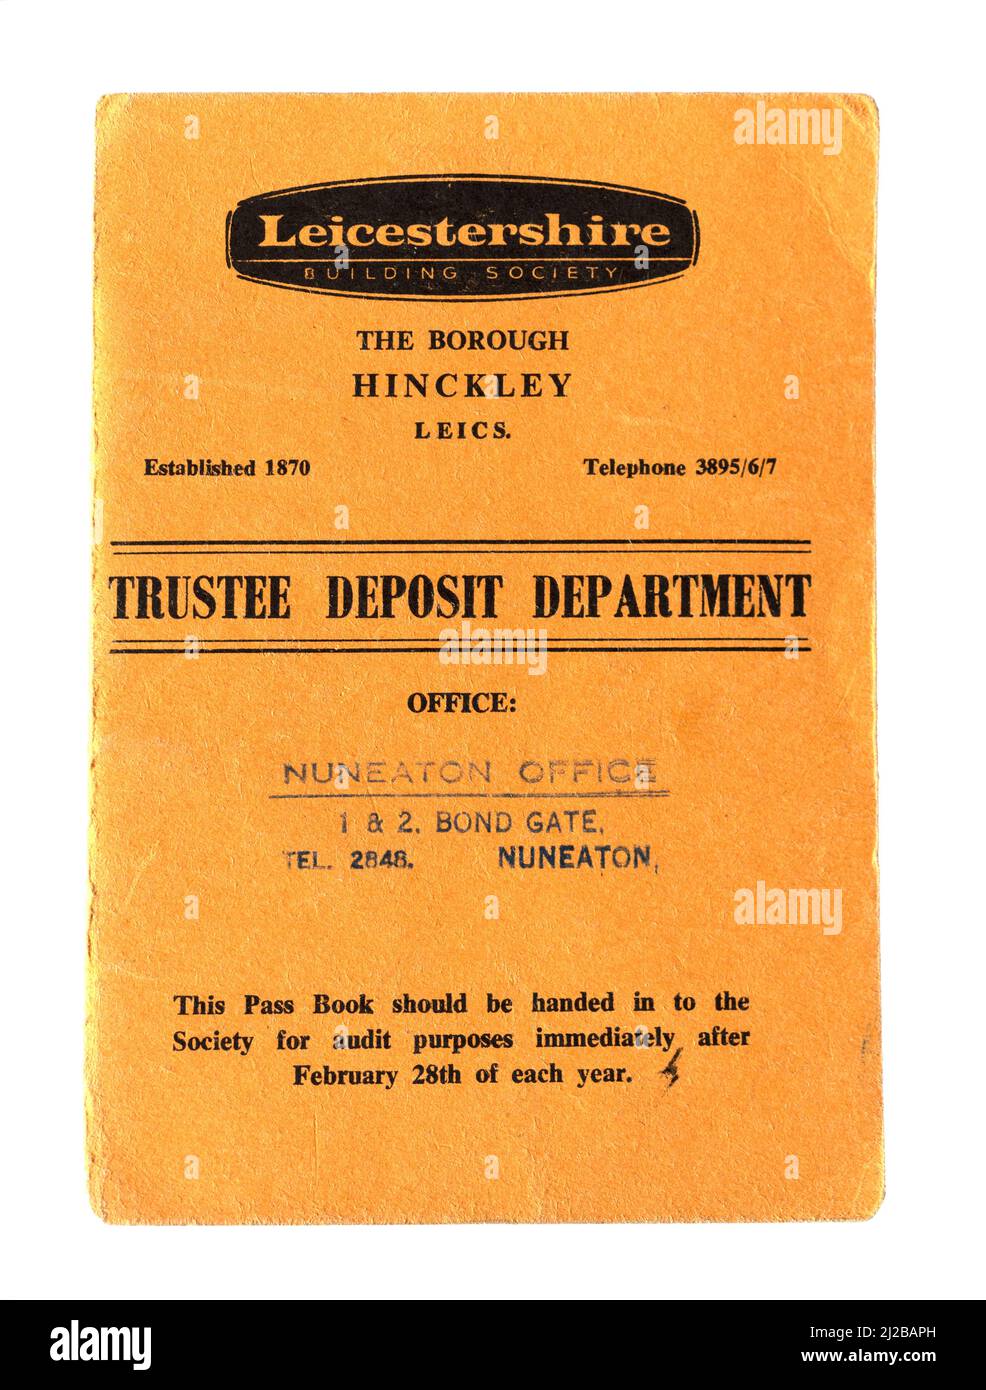 La portada de un libro de pases de ahorro para una cuenta se abrió con la Leicestershire Building Society en 1962. Foto de stock